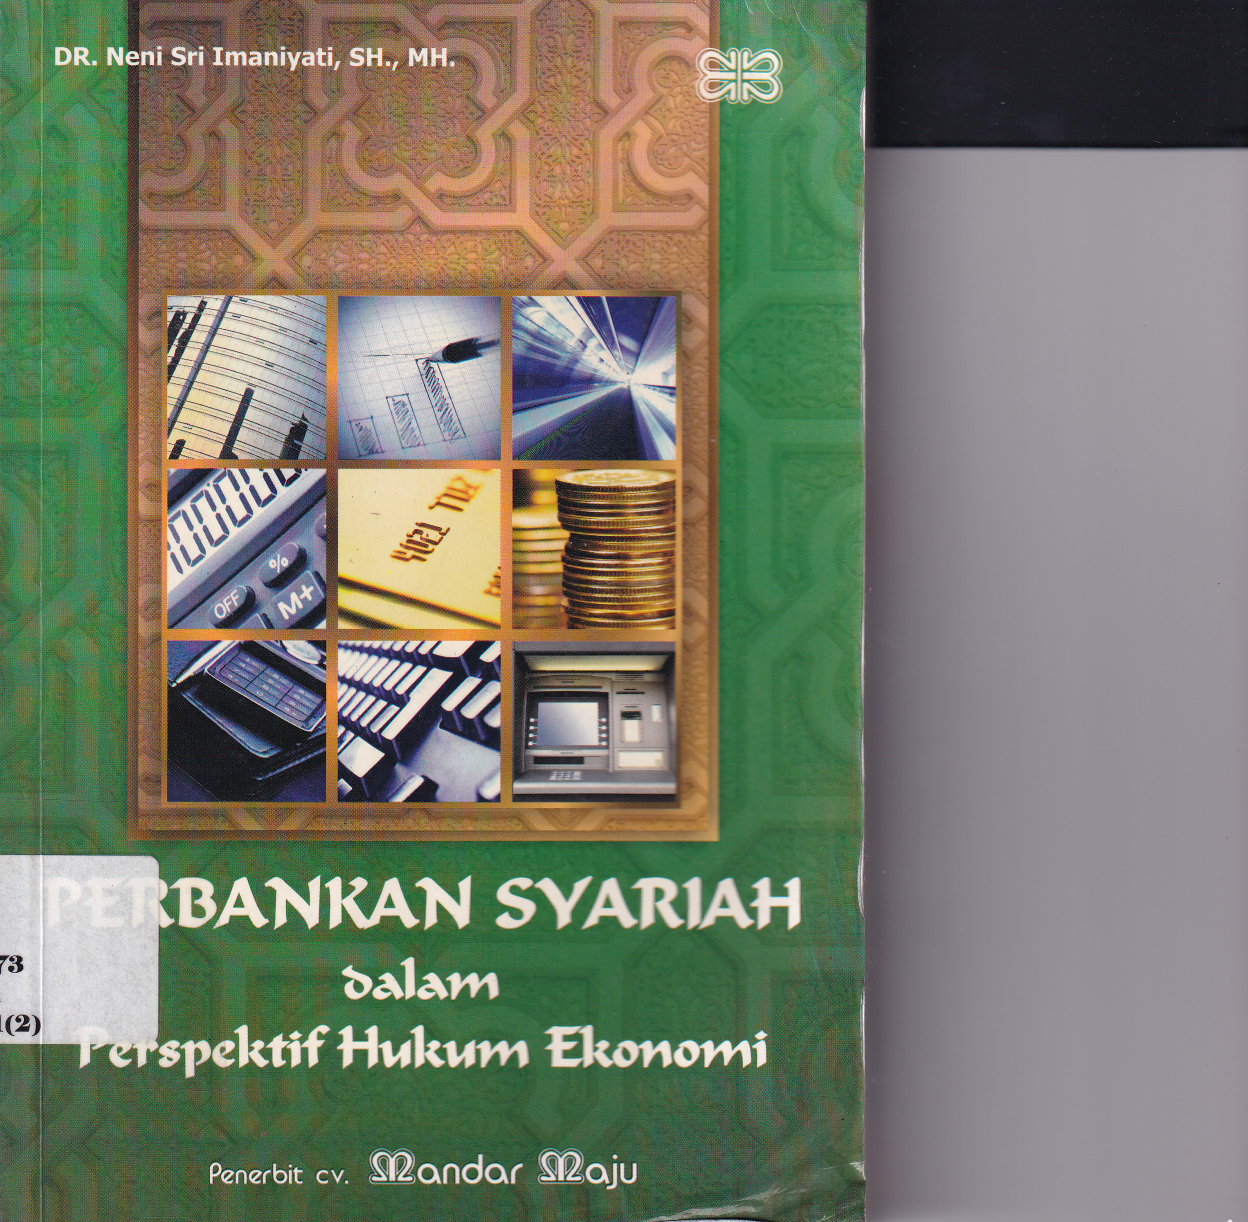 Perbankan Syariah dalam Perspektif Hukum Ekonomi